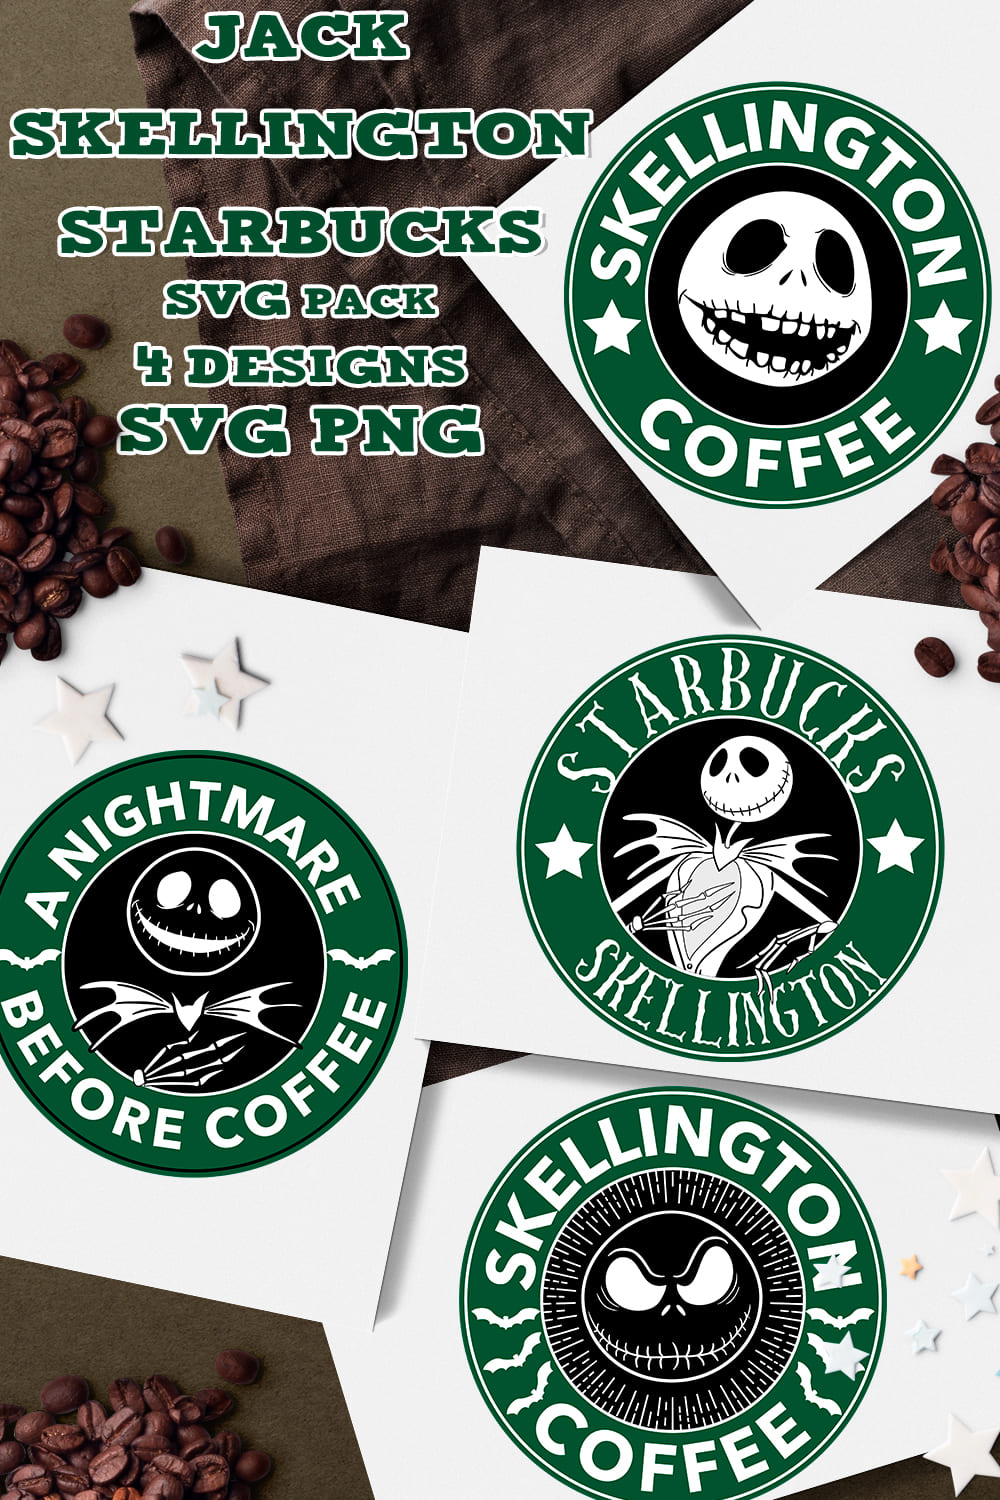 Jack Skellington Starbucks SVG - pinterest image preview.